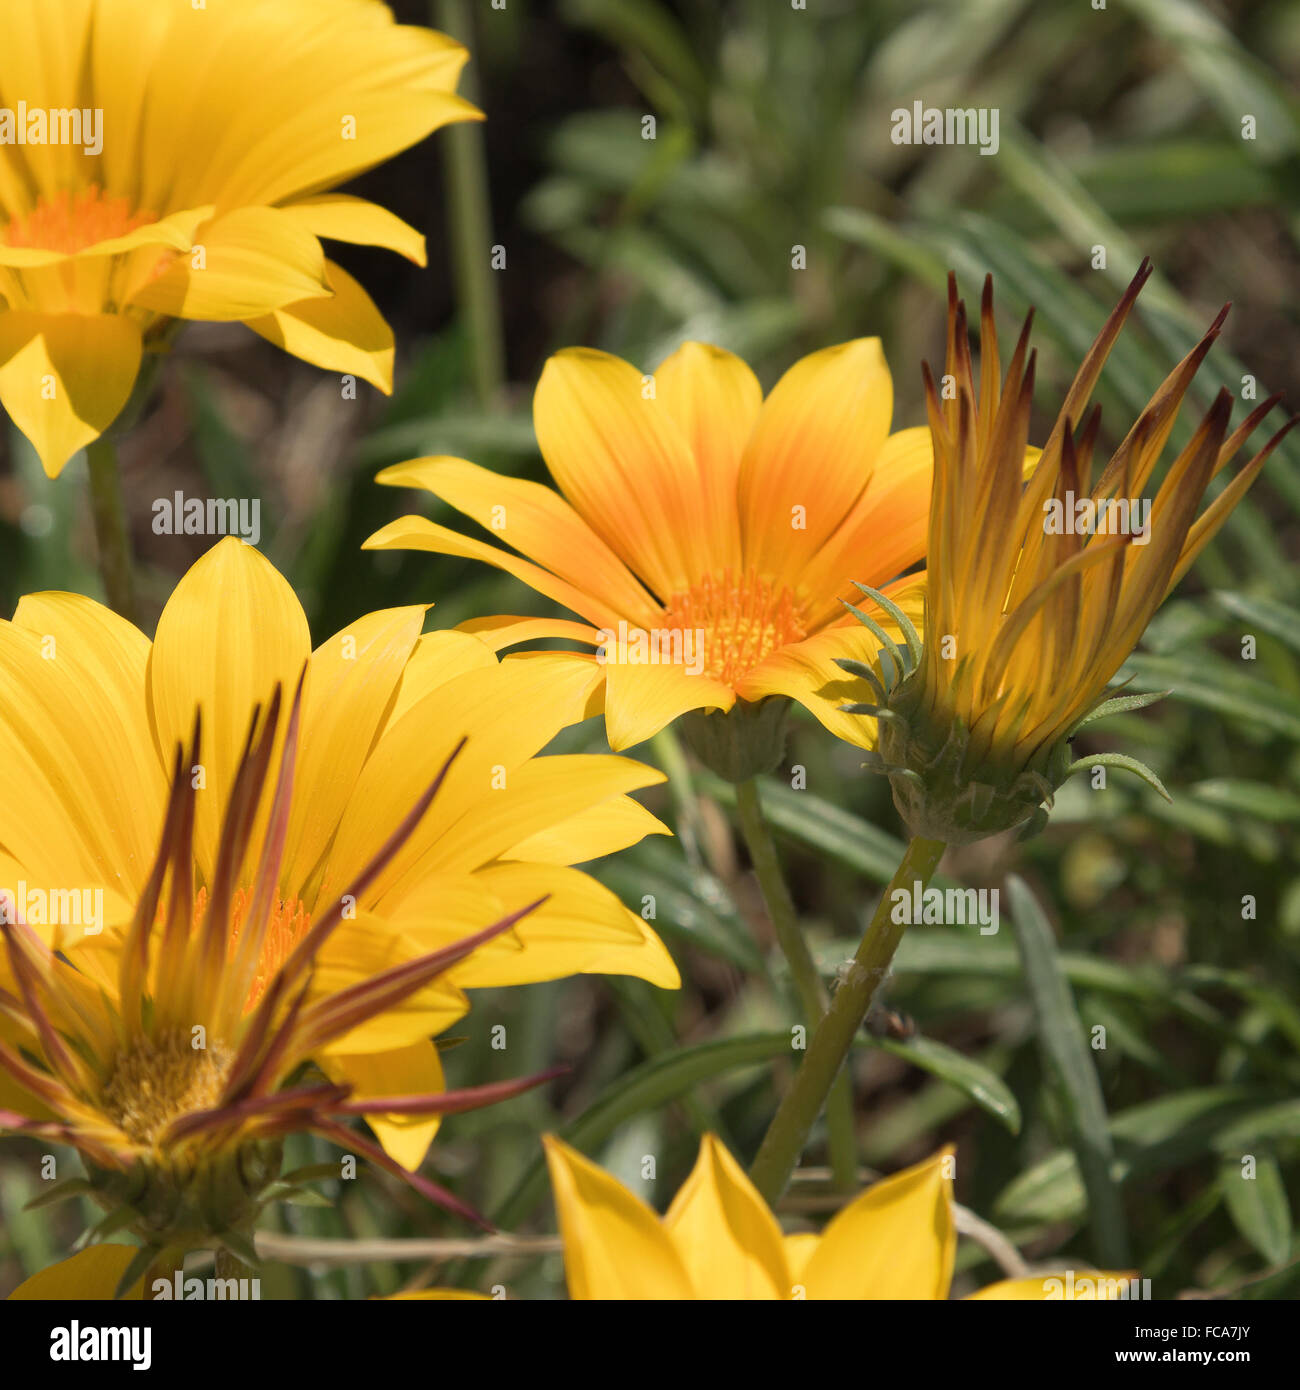 Yellow ice plant flowers Stock Photo